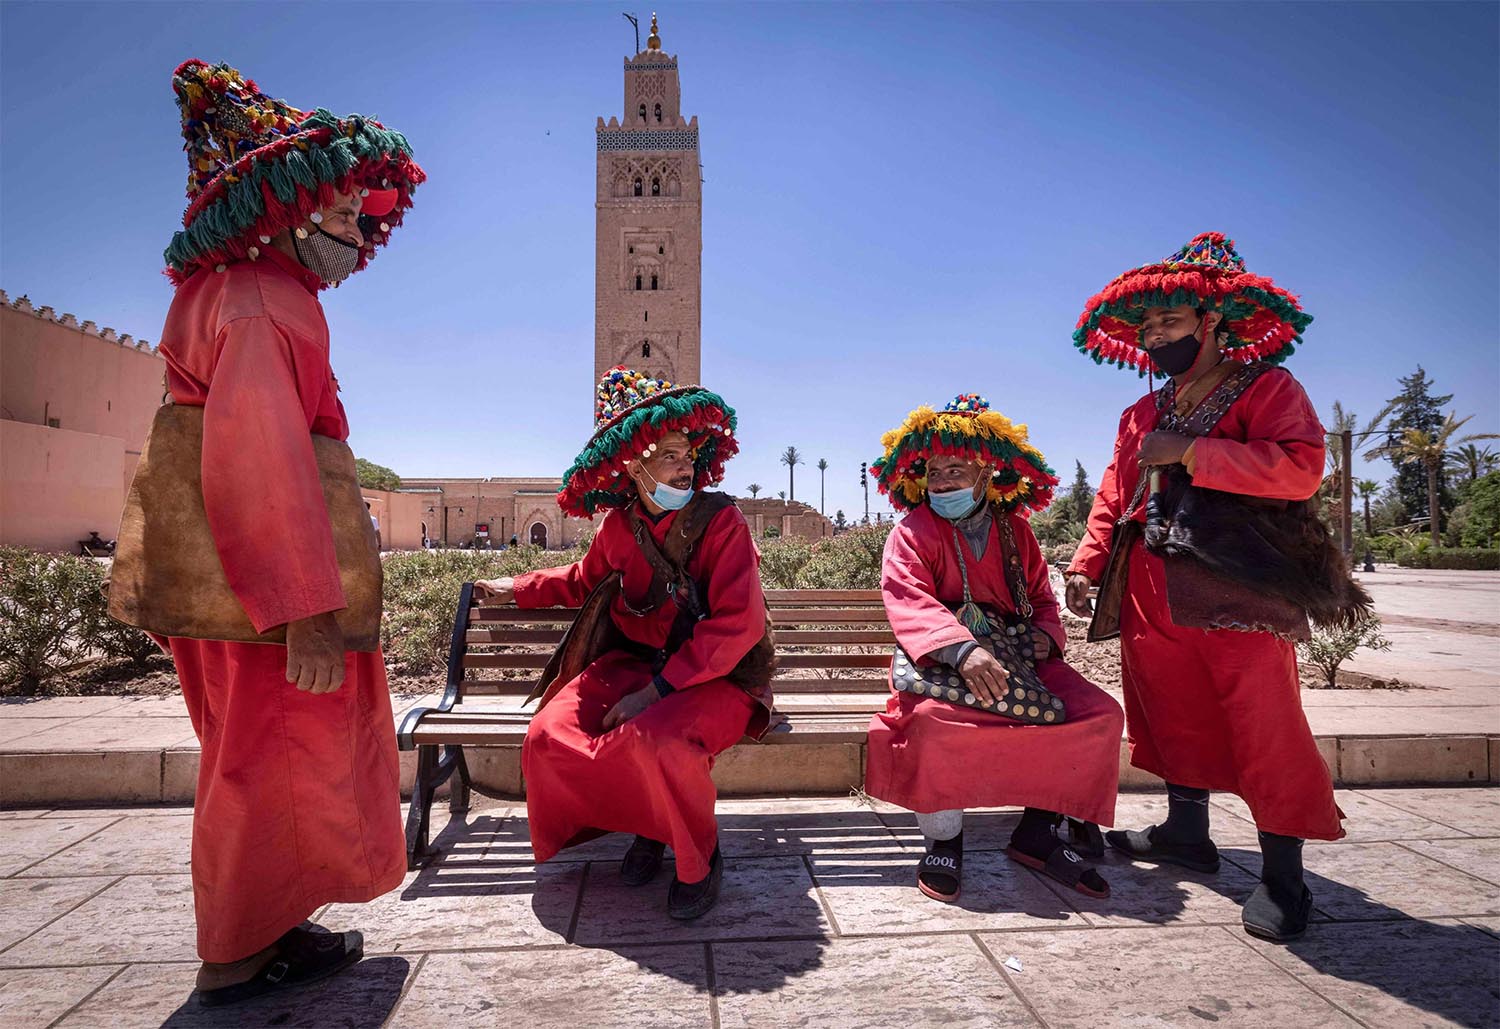 Morocco has kept its borders shut since late November 